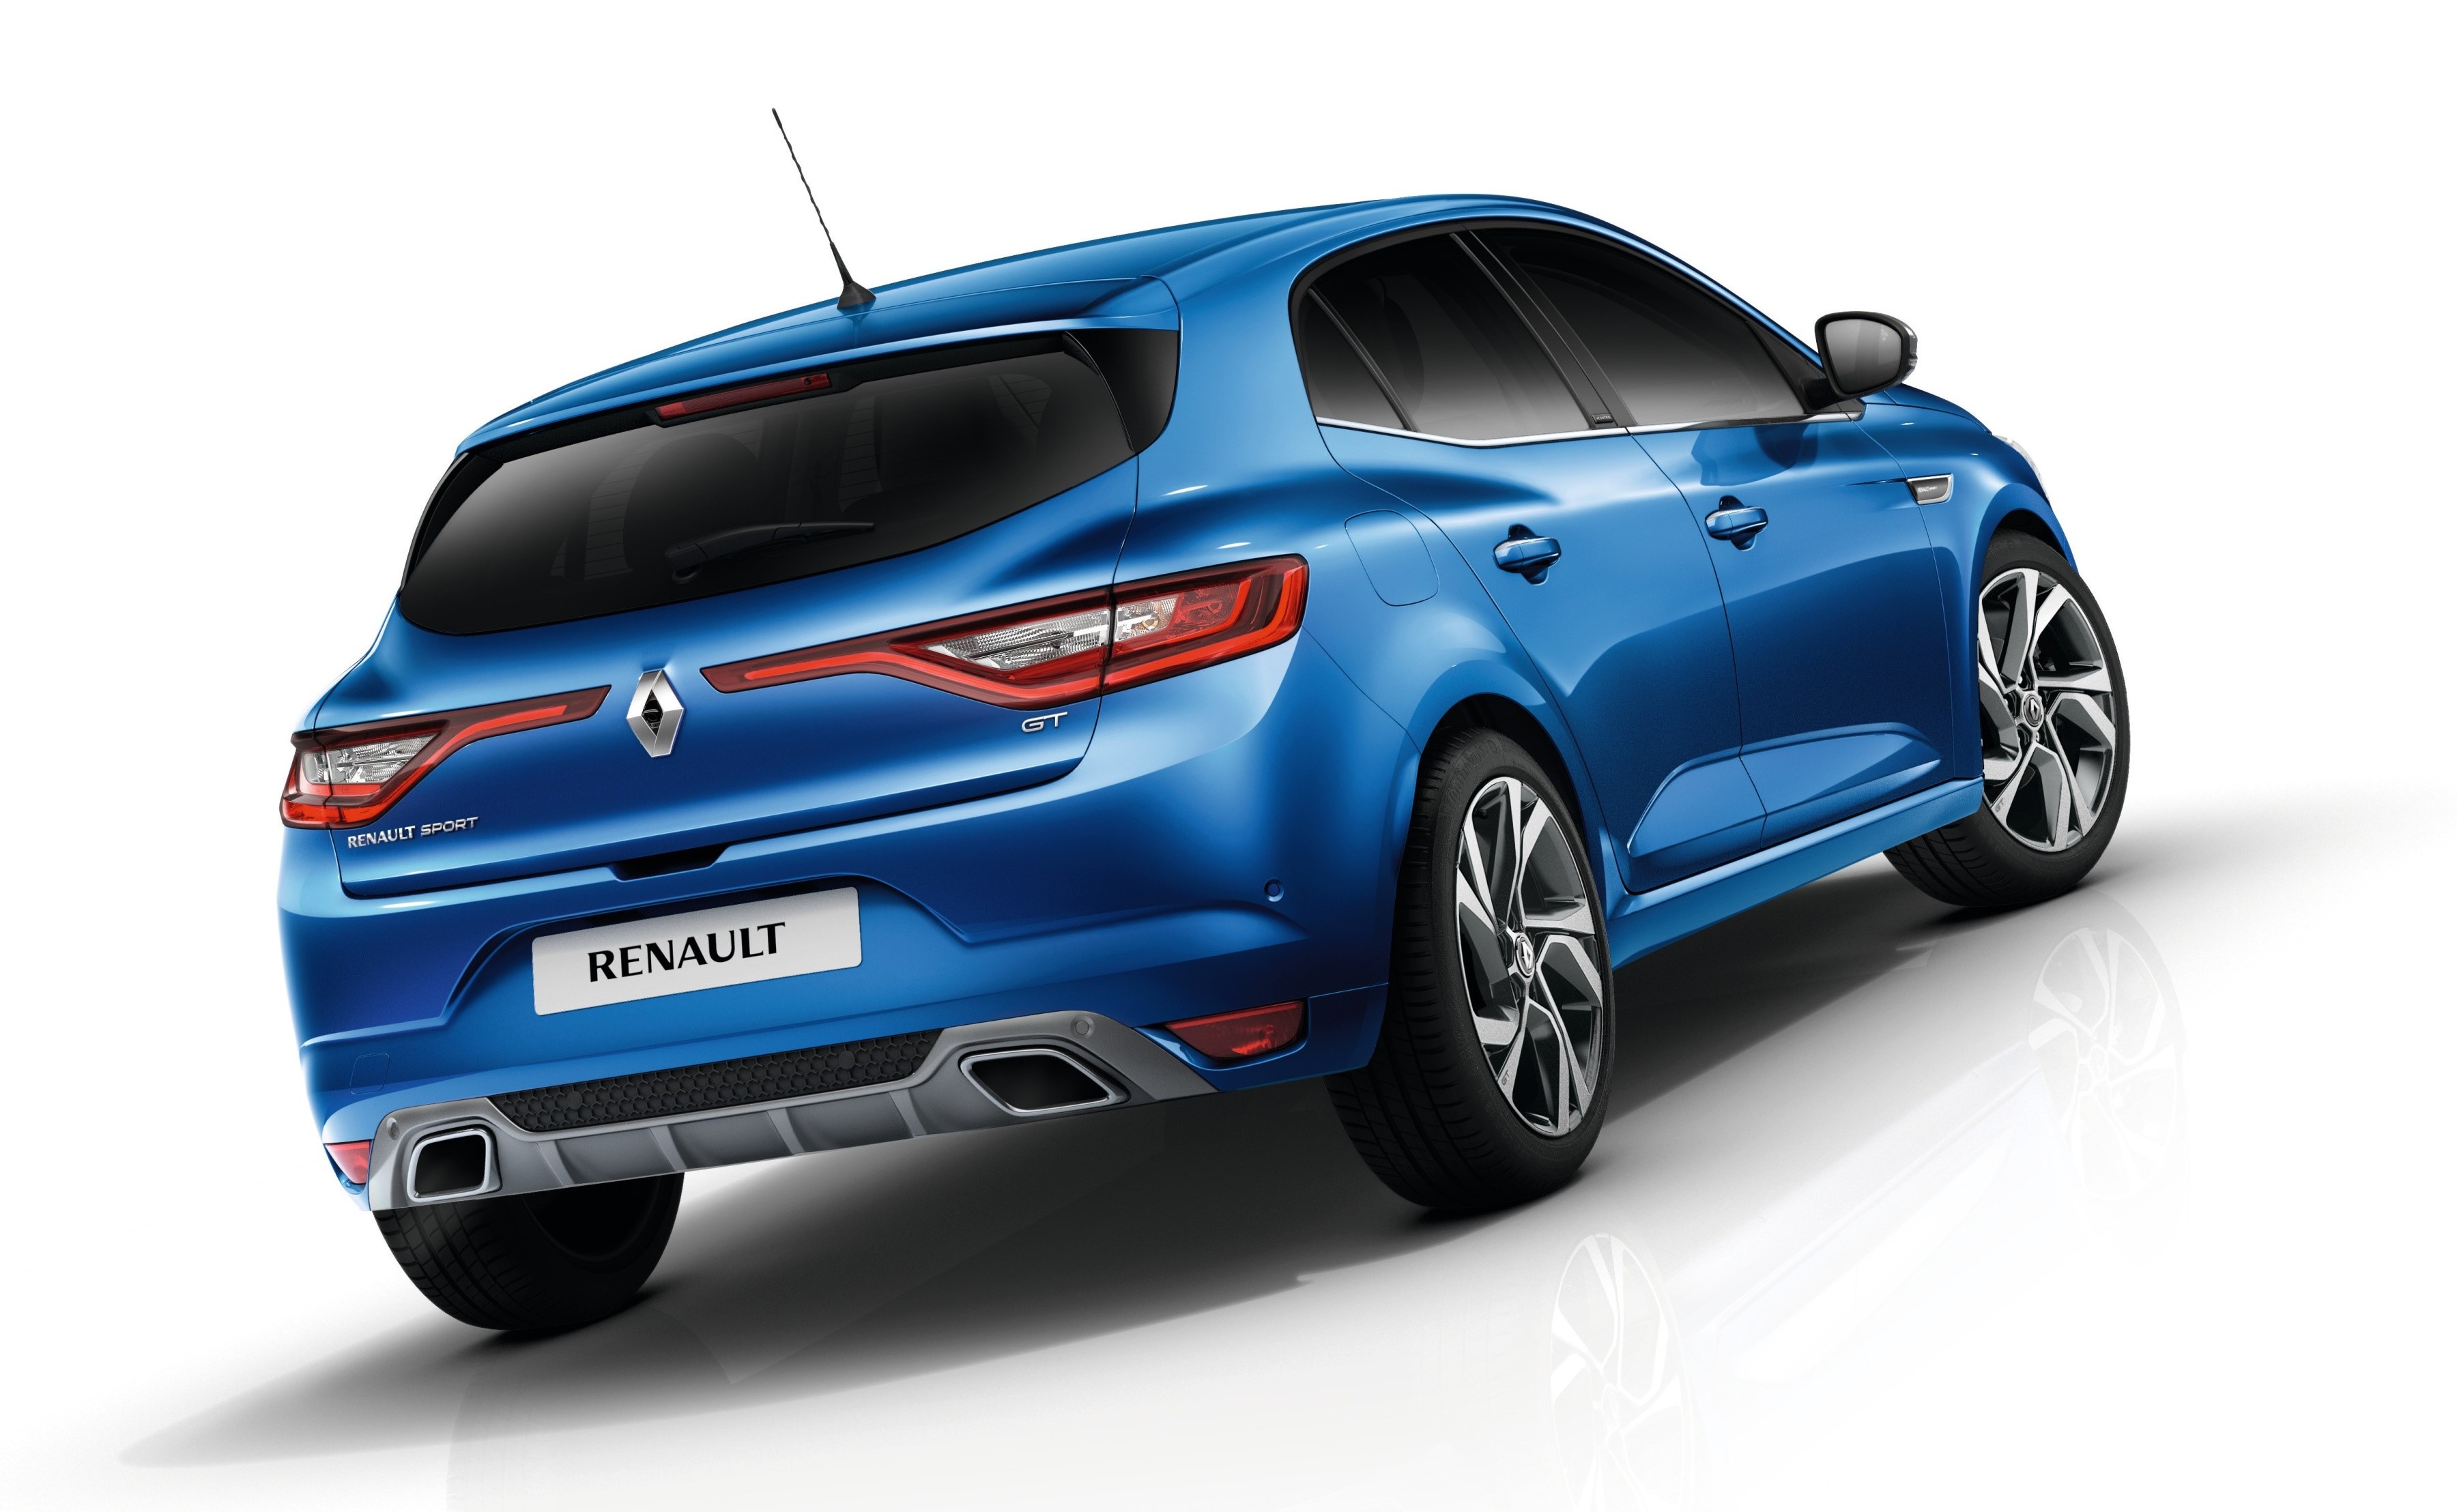 Renault Megane Hatchback best big